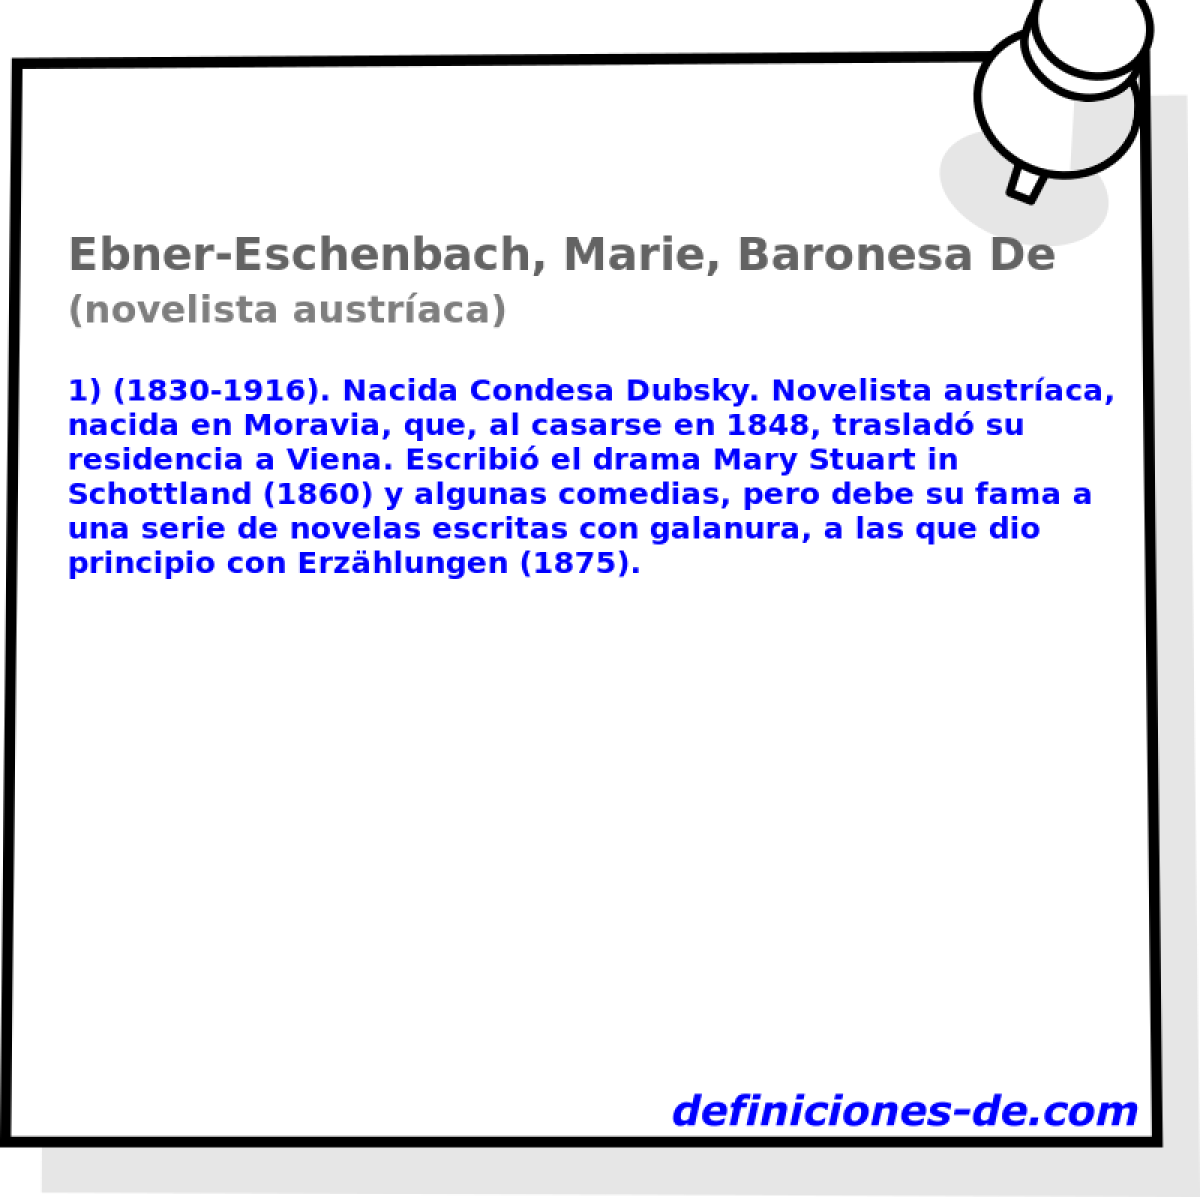 Ebner-Eschenbach, Marie, Baronesa De (novelista austraca)